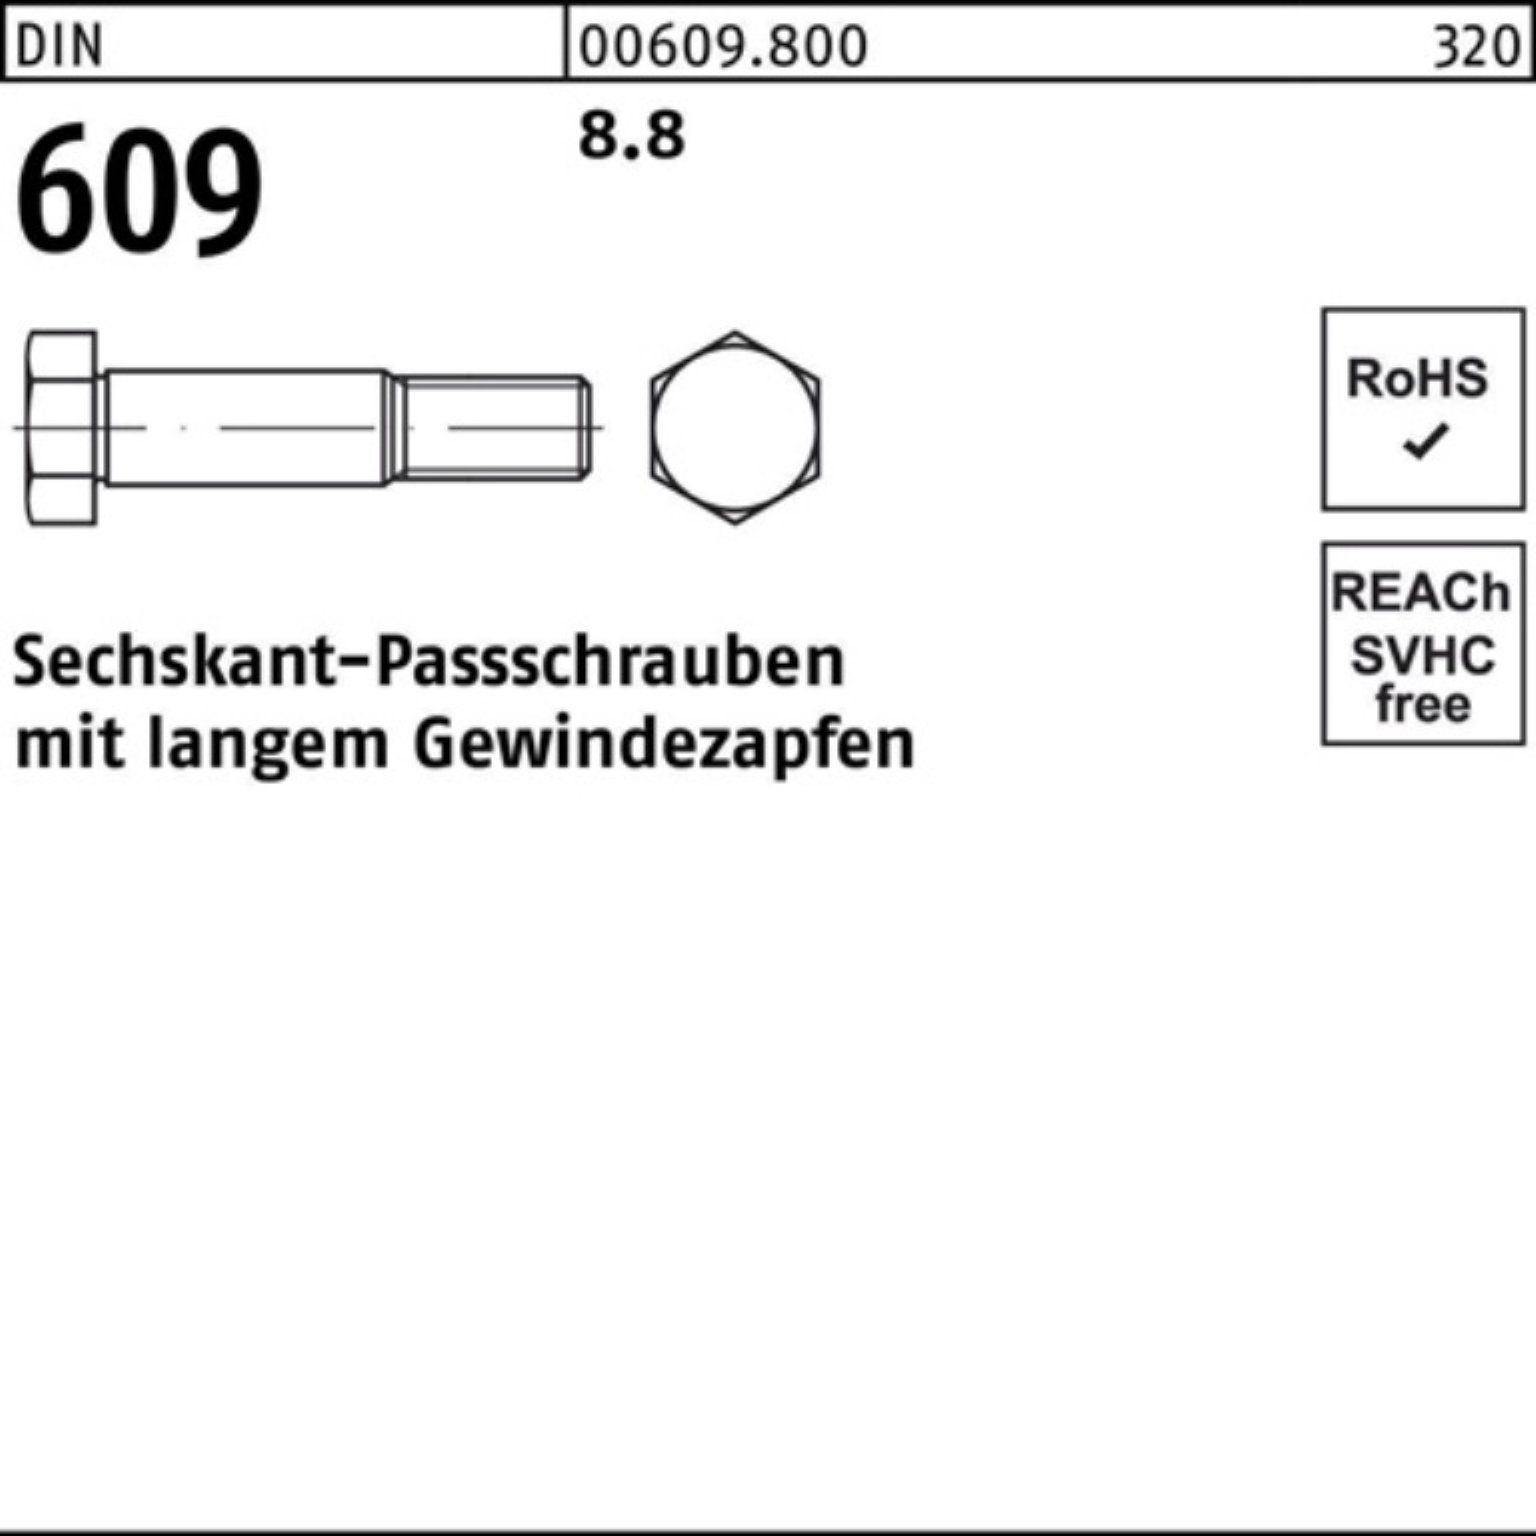 Sechskantpassschraube Reyher Gewindezapfen Pack Schraube 100er 609 DIN 110 langem M24x